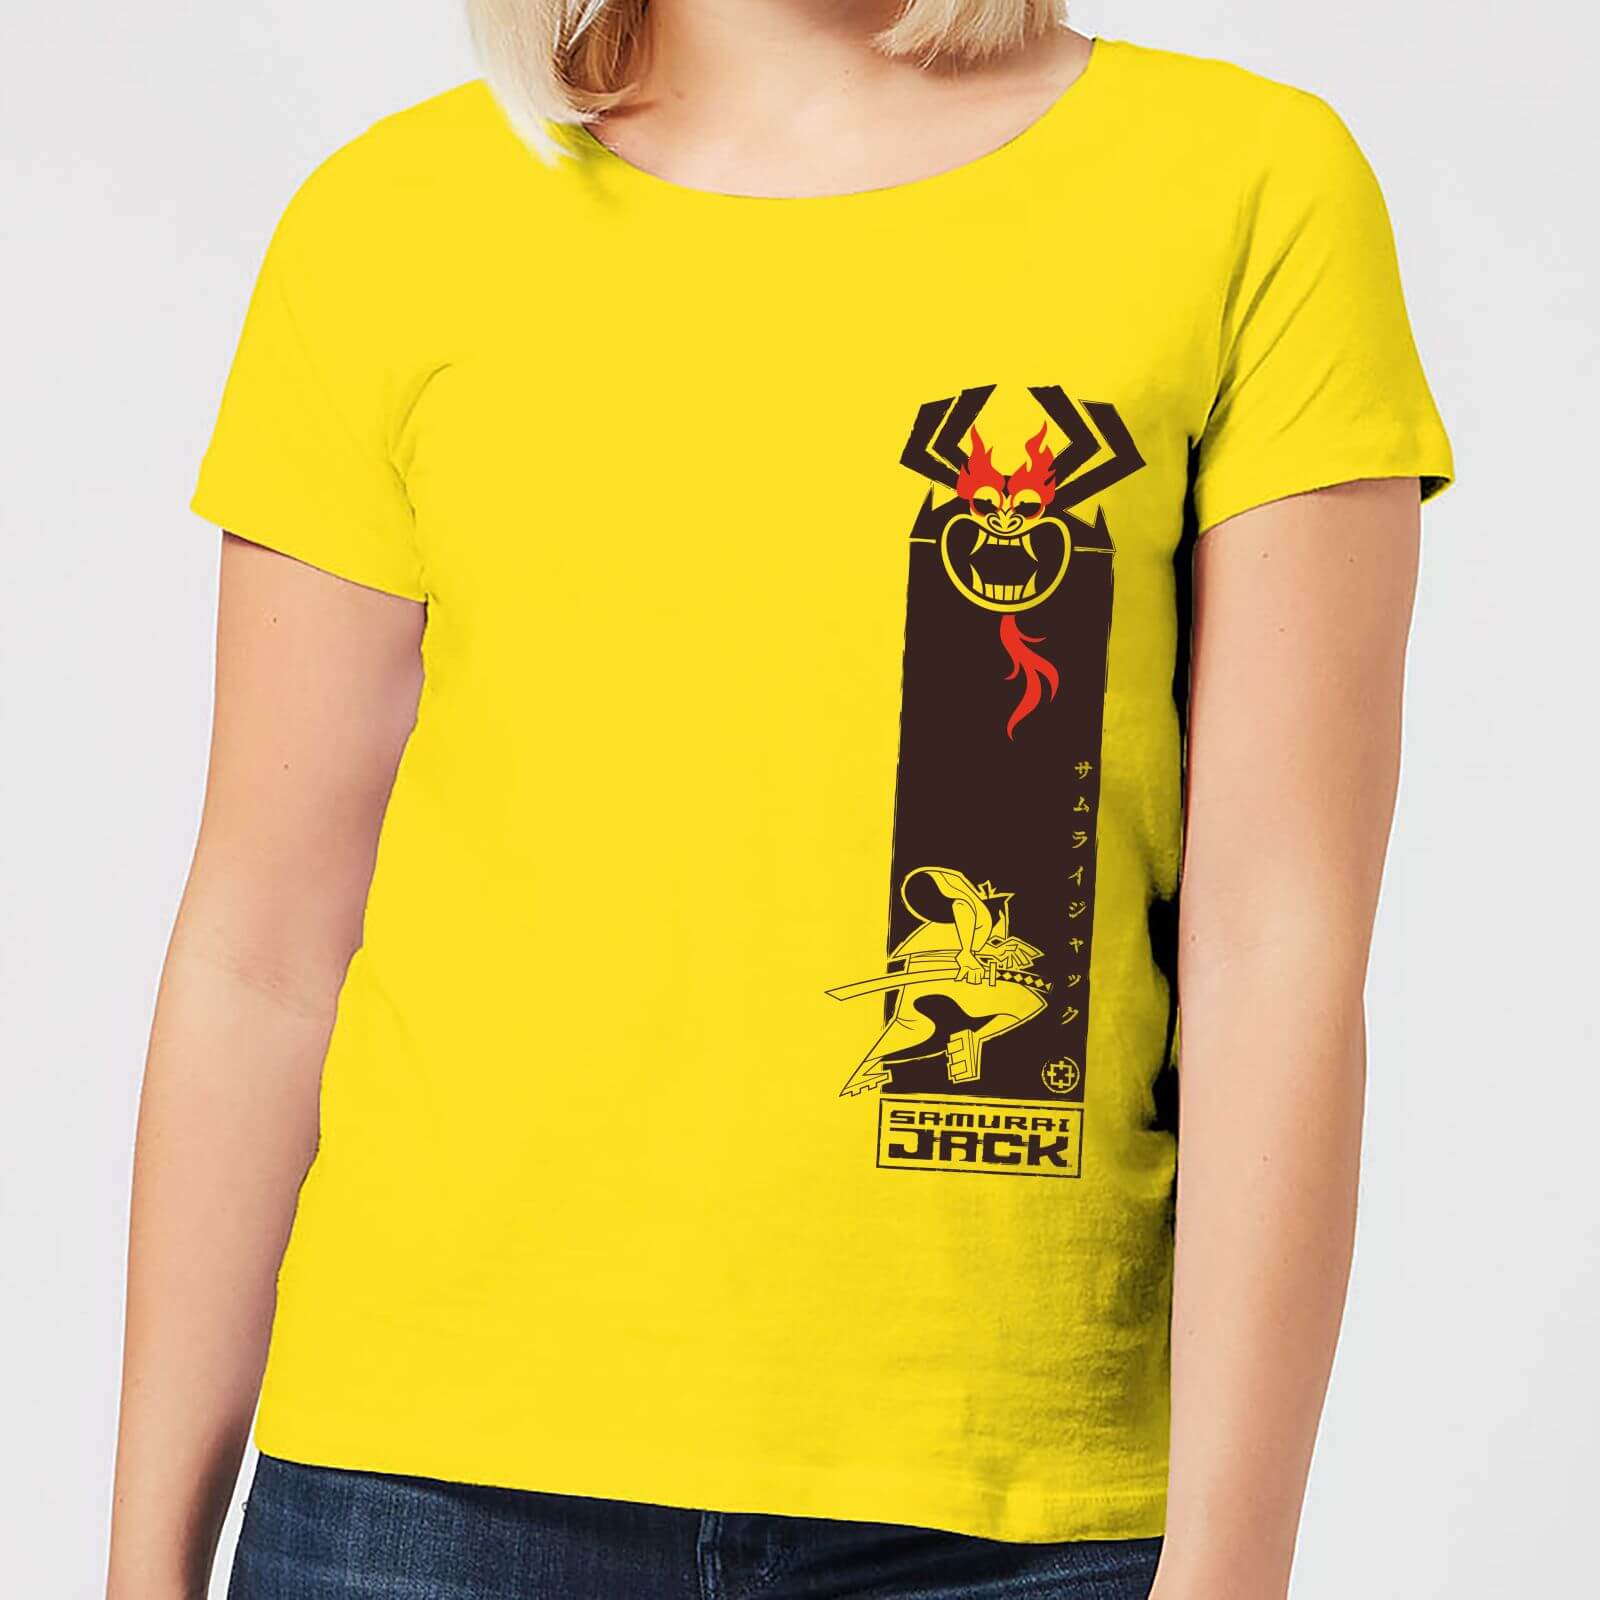 Samurai Jack Samurai Stripe Women's T-Shirt - Yellow - S - Yellow